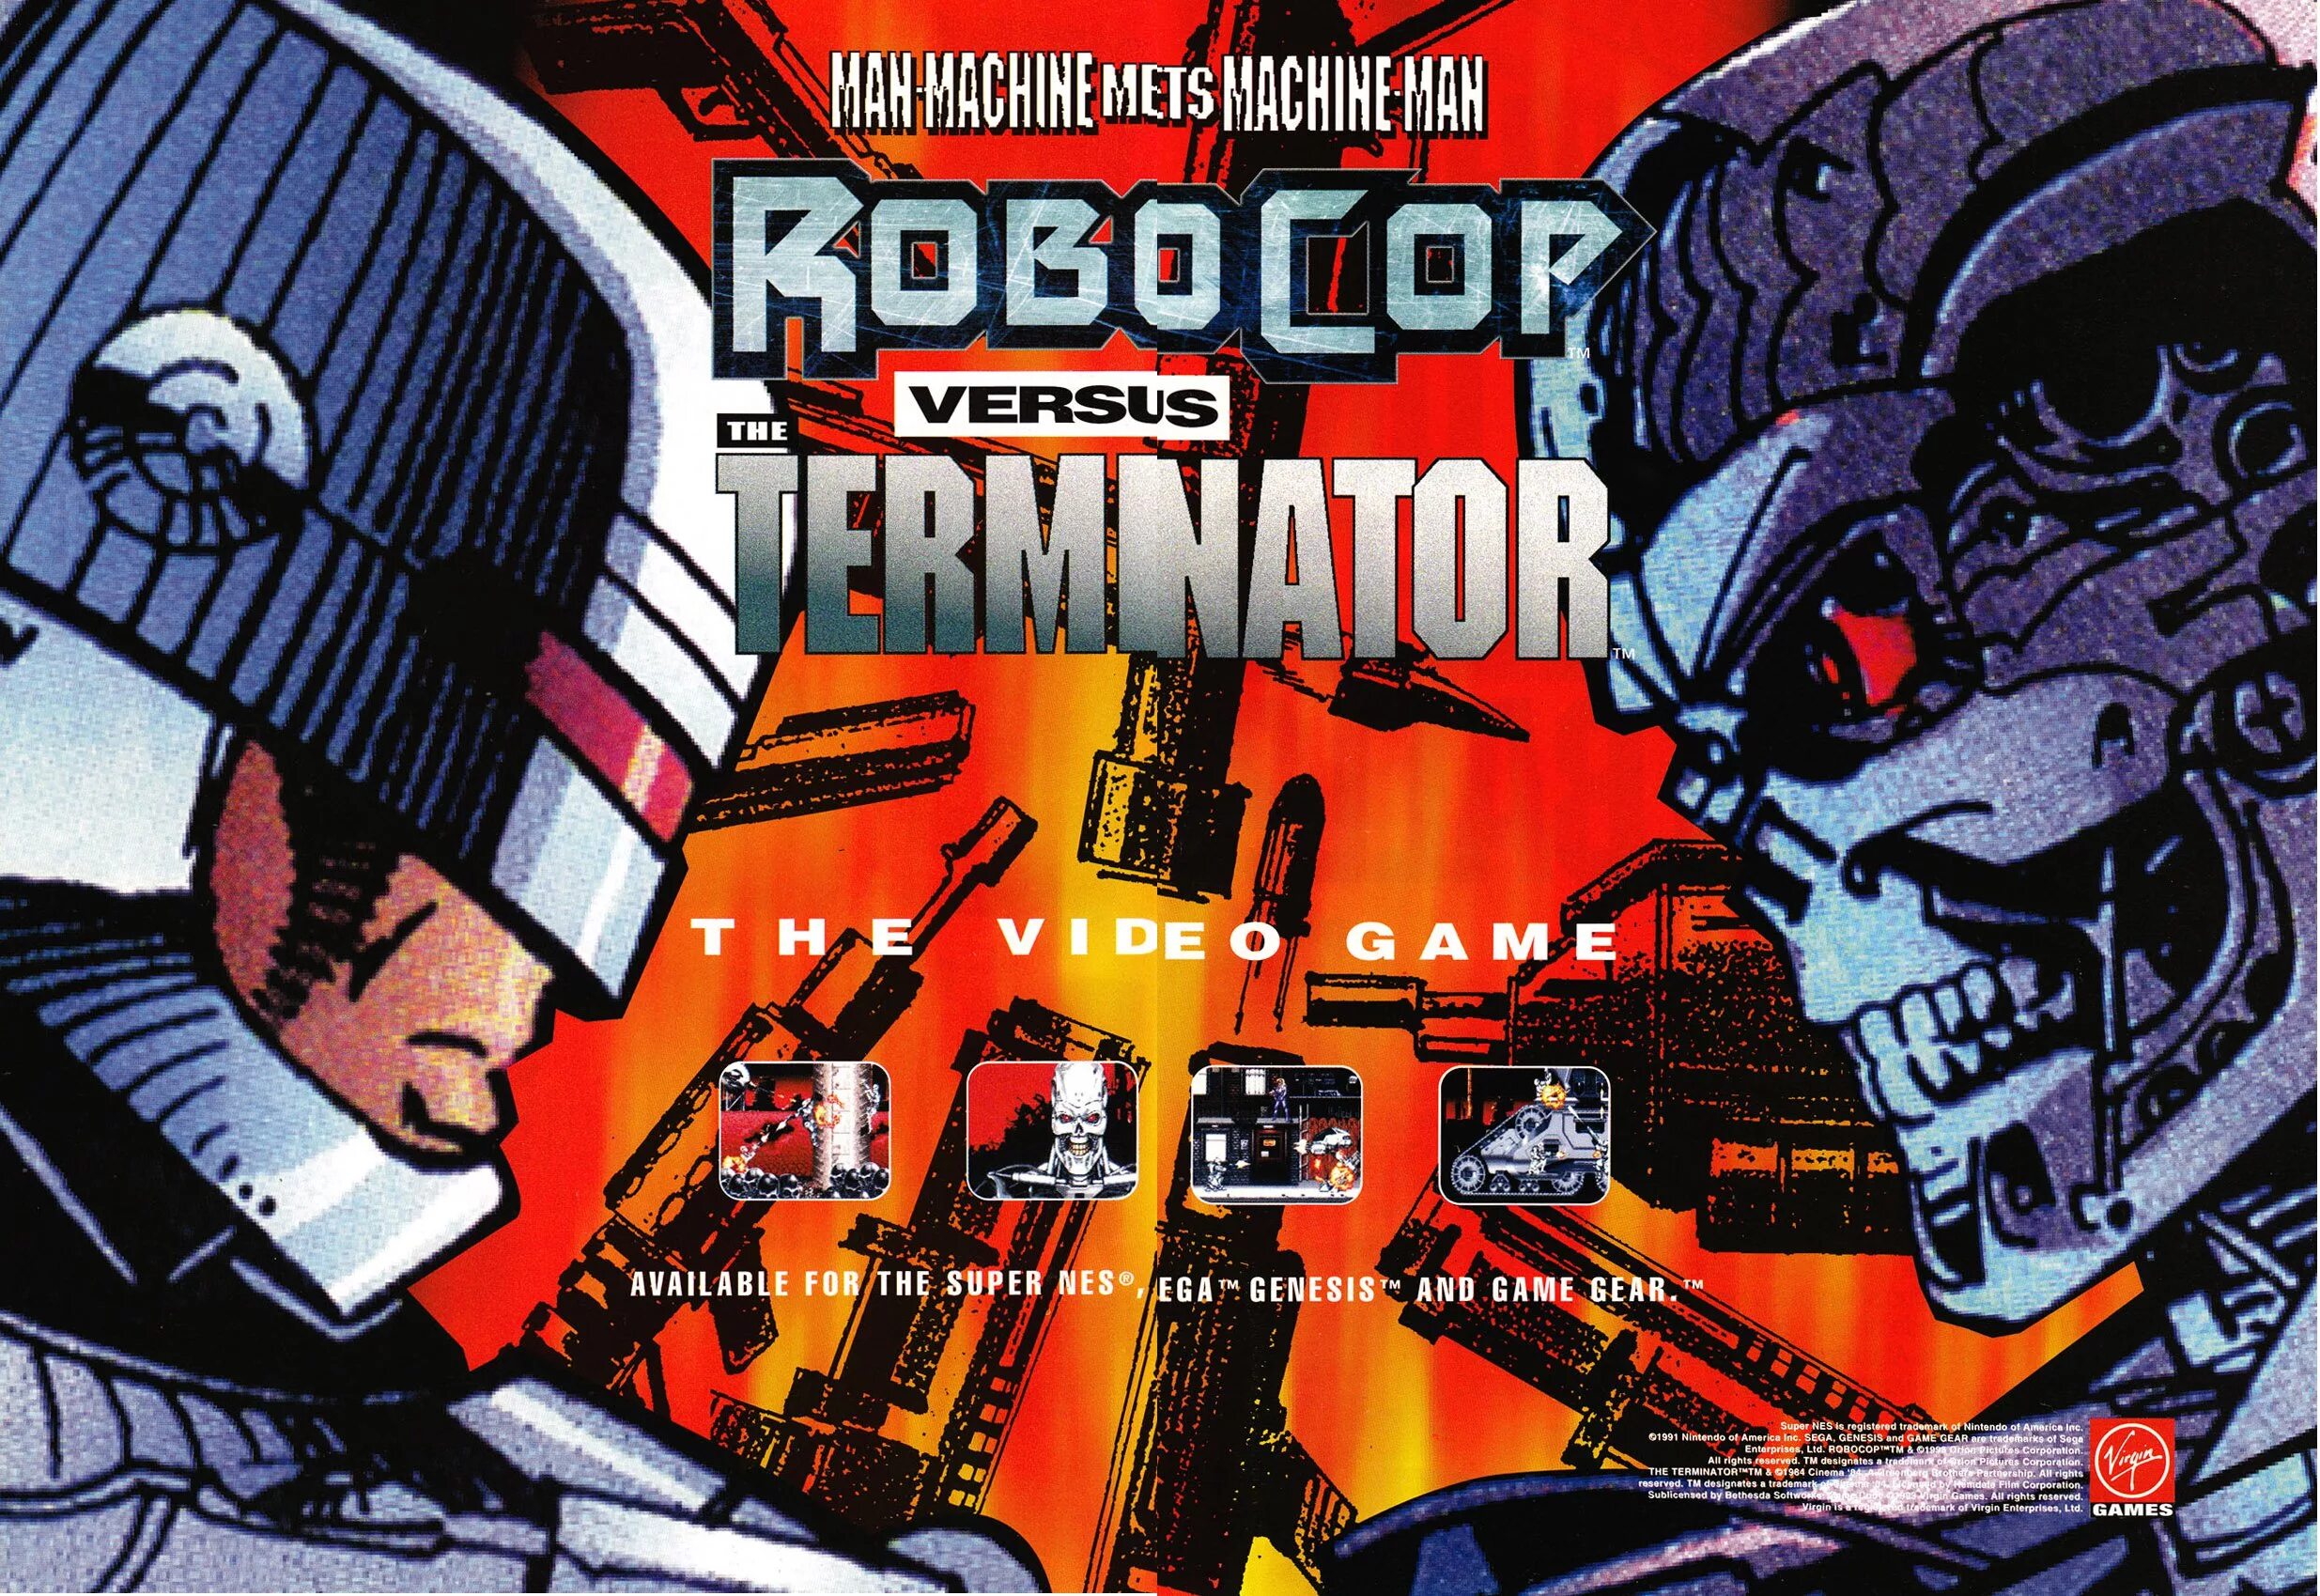 Терминатор 1 Sega. Robocop vs Terminator сега обложка. Игра Sega: Robocop versus Terminator. Robocop vs Terminator игра. Игры сега робокоп